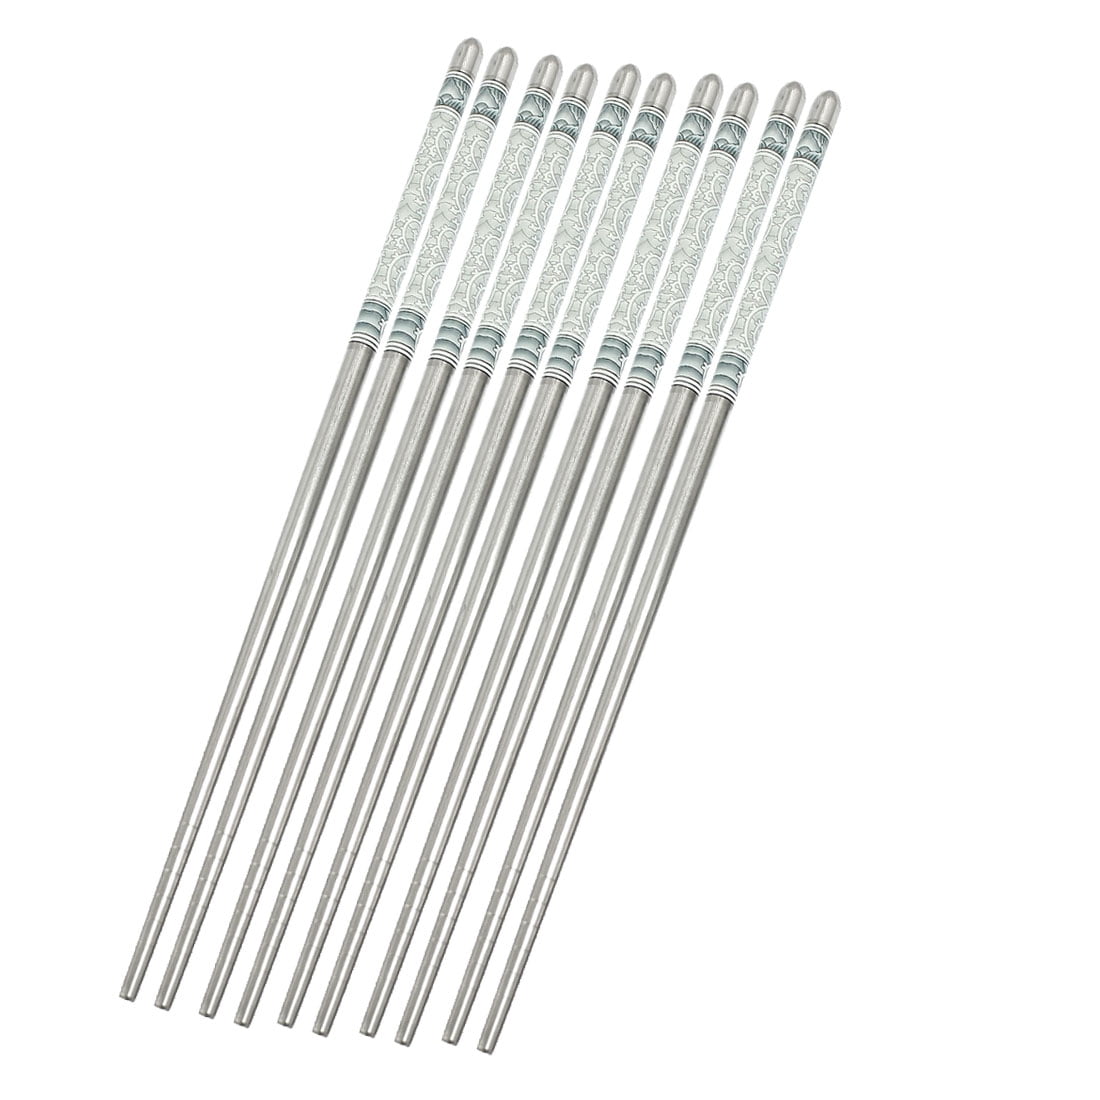 Creative Gift 1 Pair Stainless Steel Chopsticks Chop Sticks Beautiful Design 